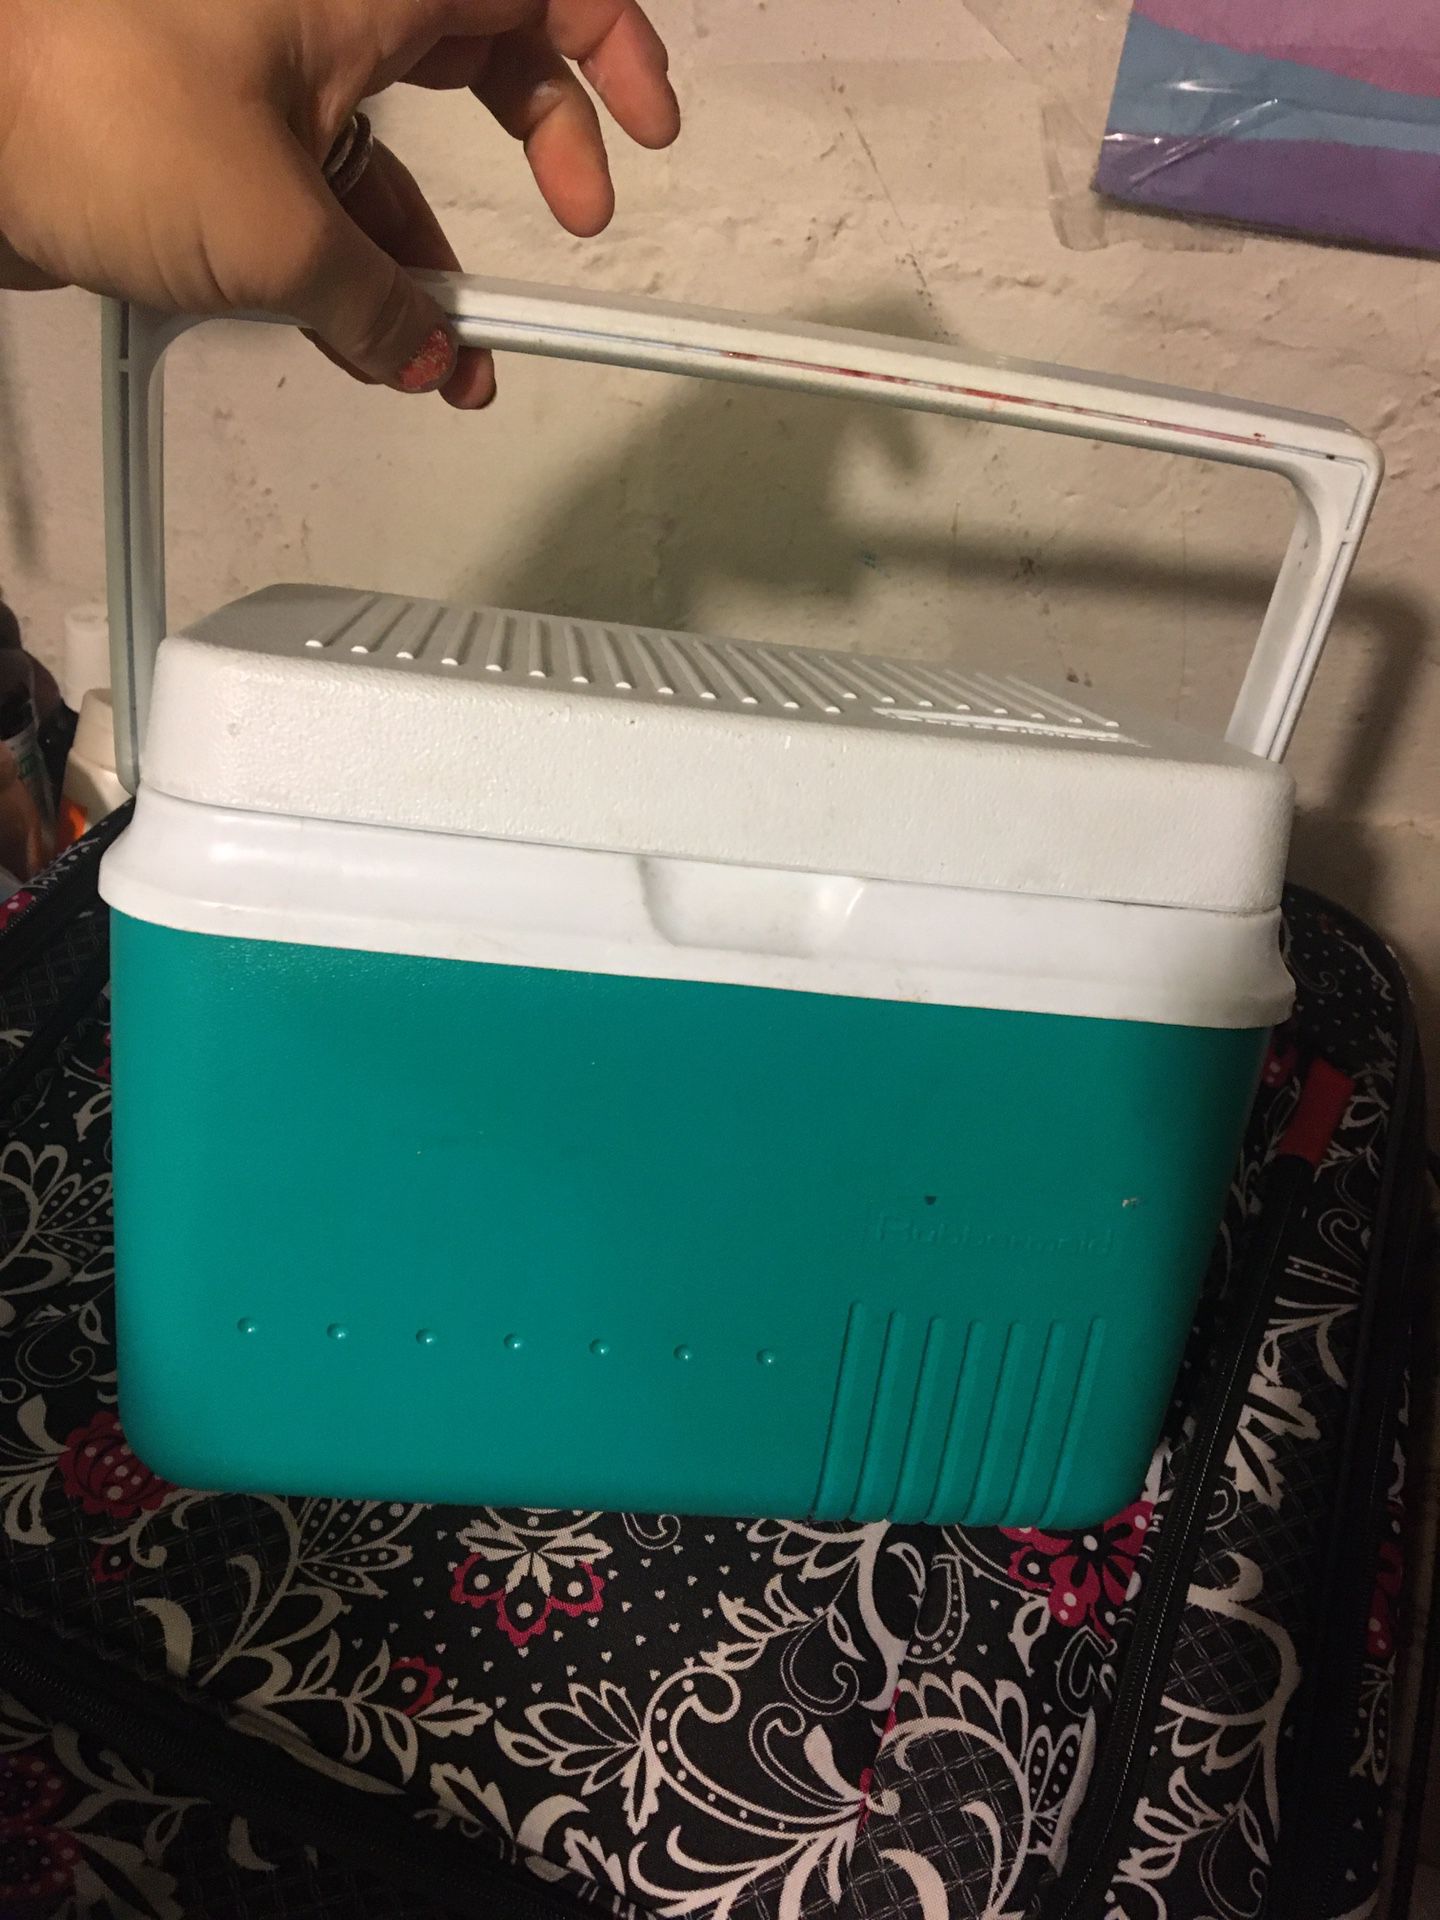 Mini Cooler